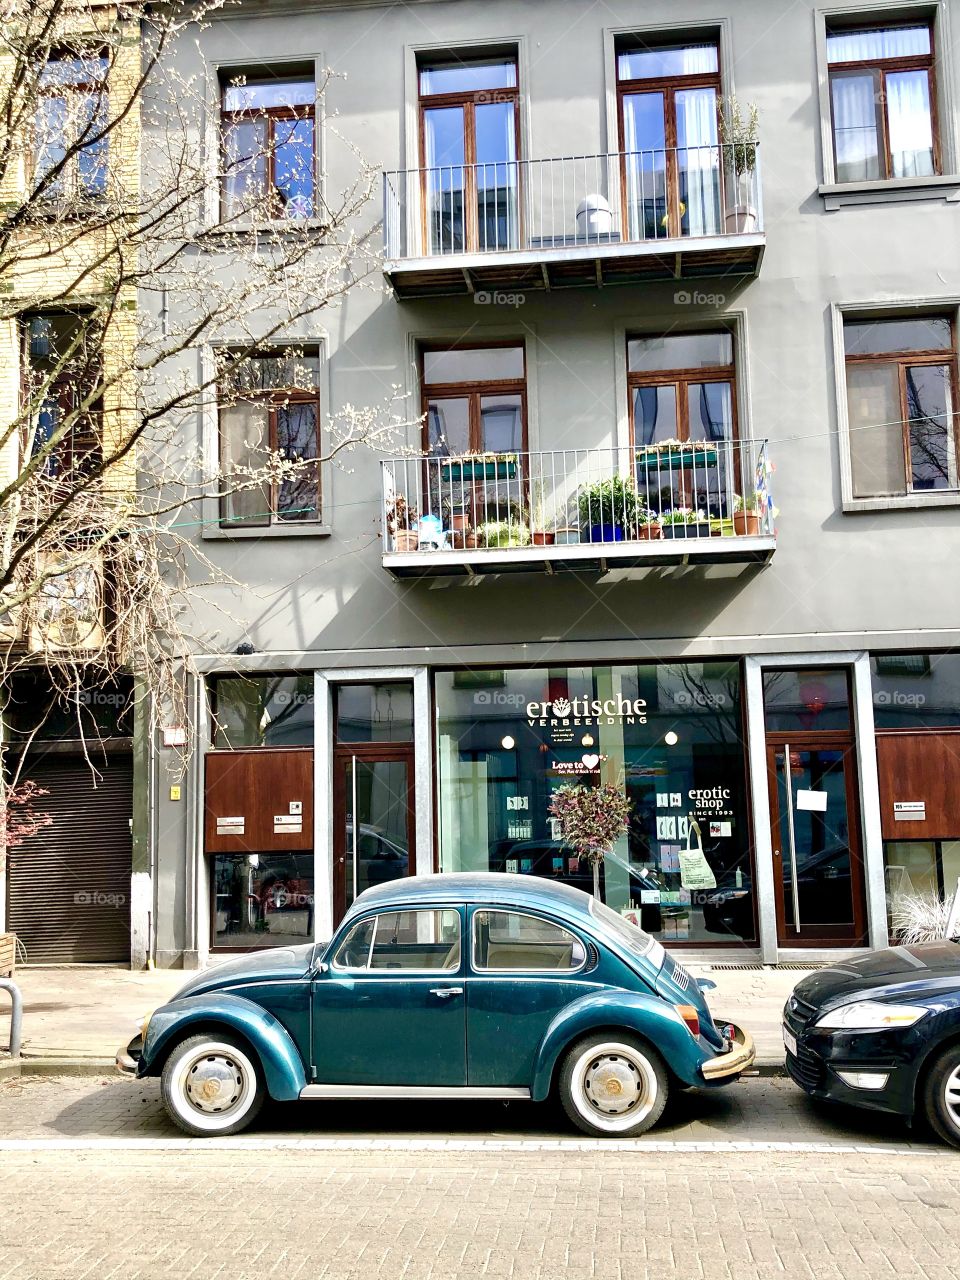 The kinky VW beetle 